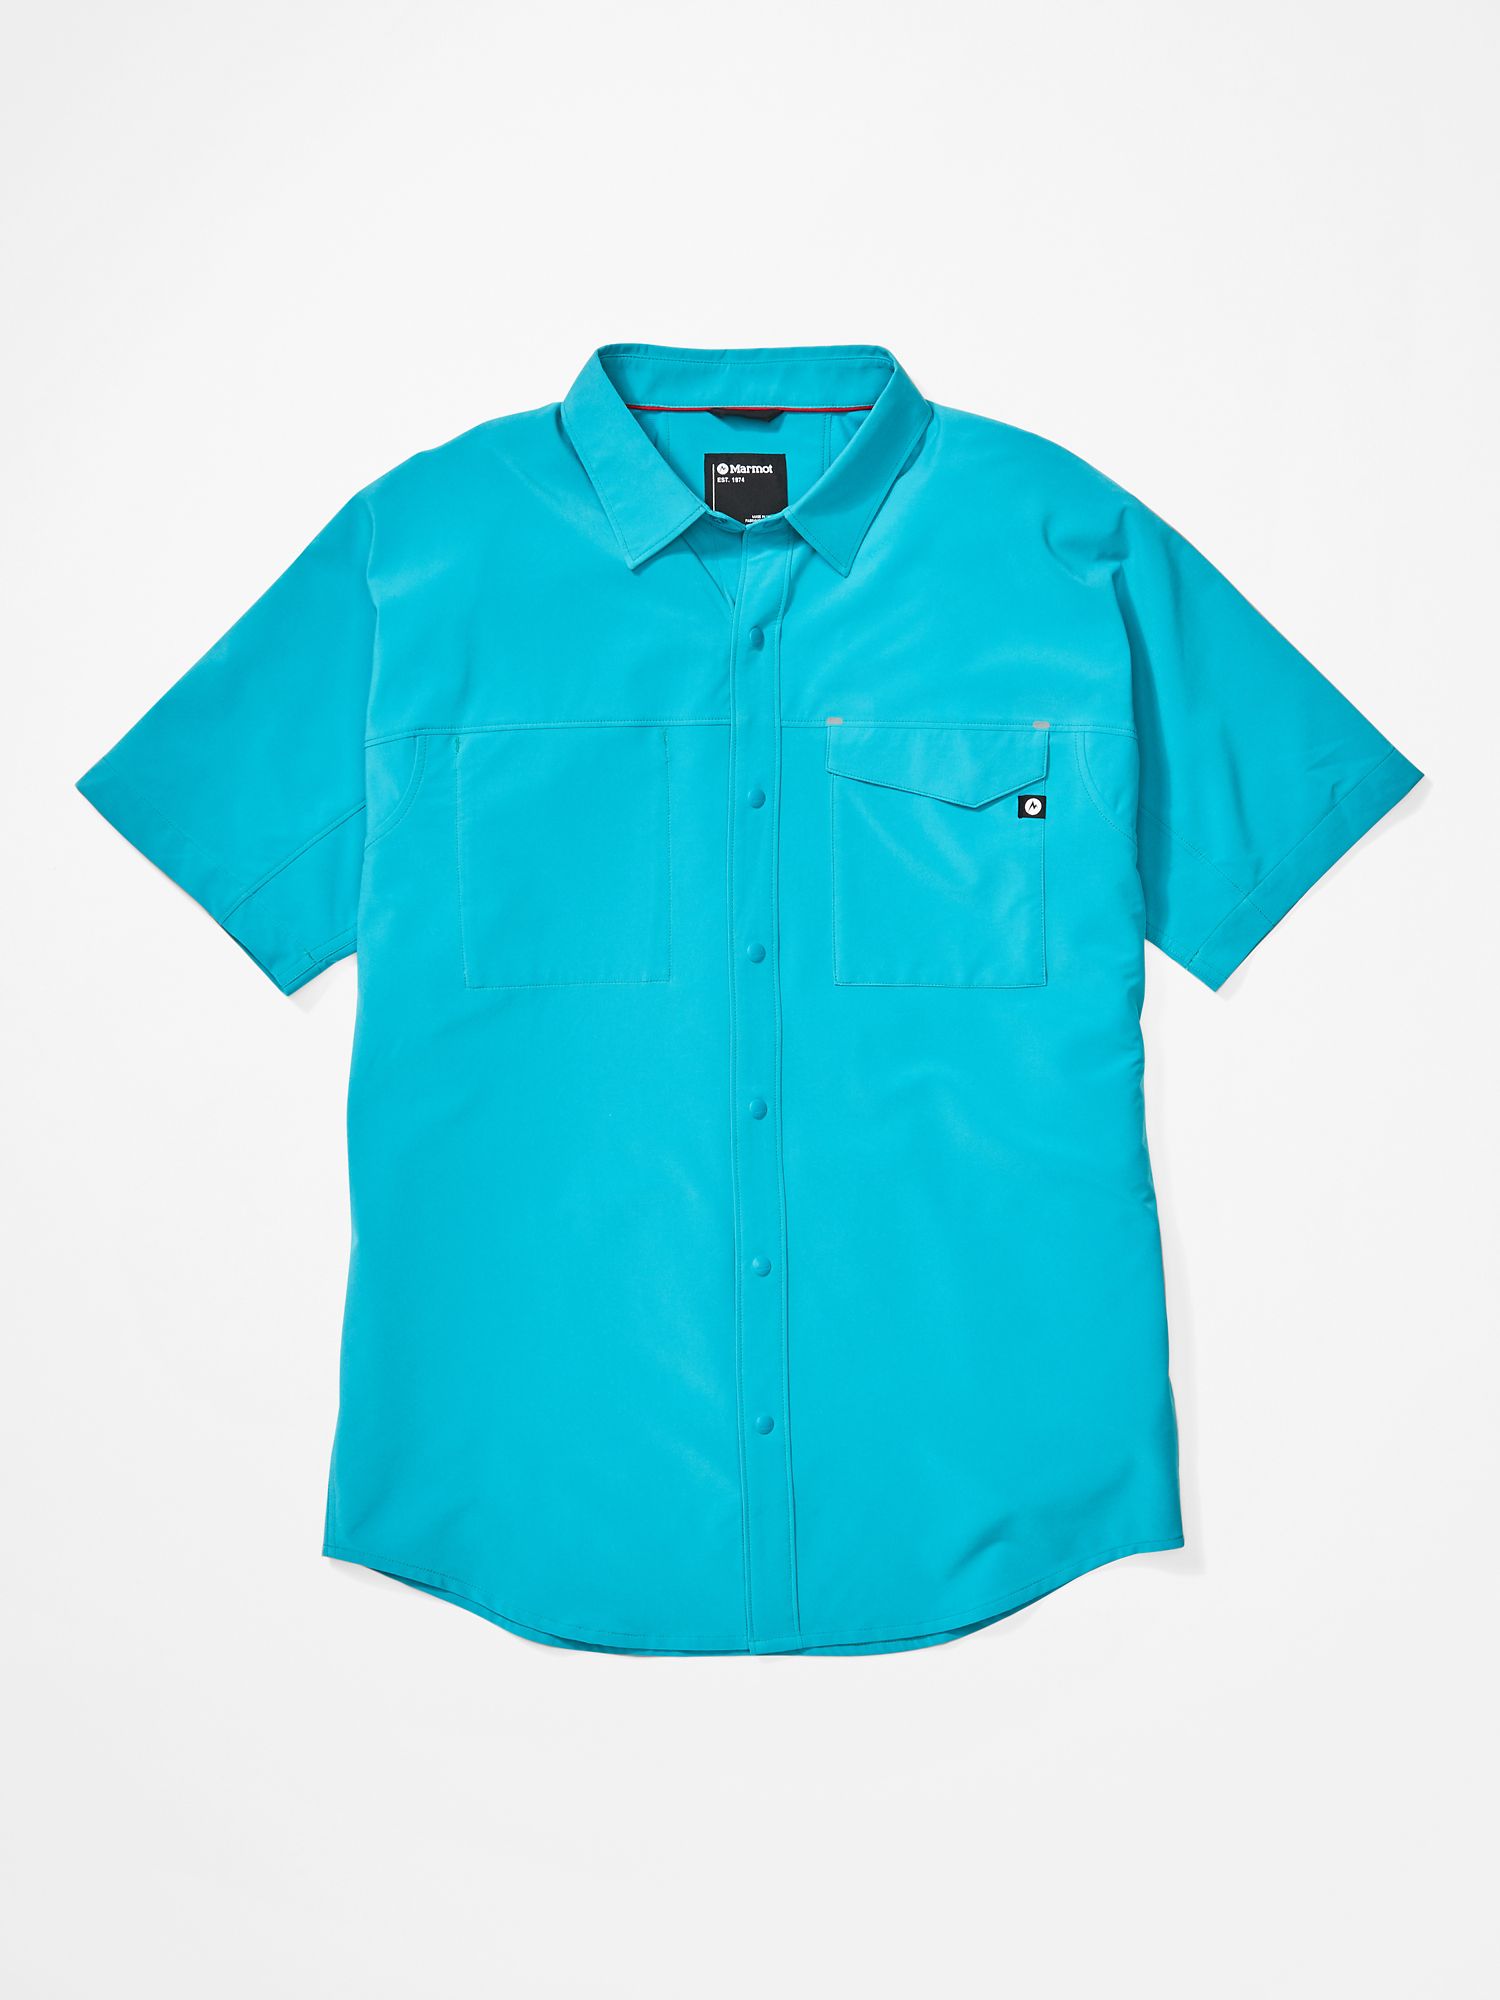 Men's Northgate Peak Short-Sleeve Shirt